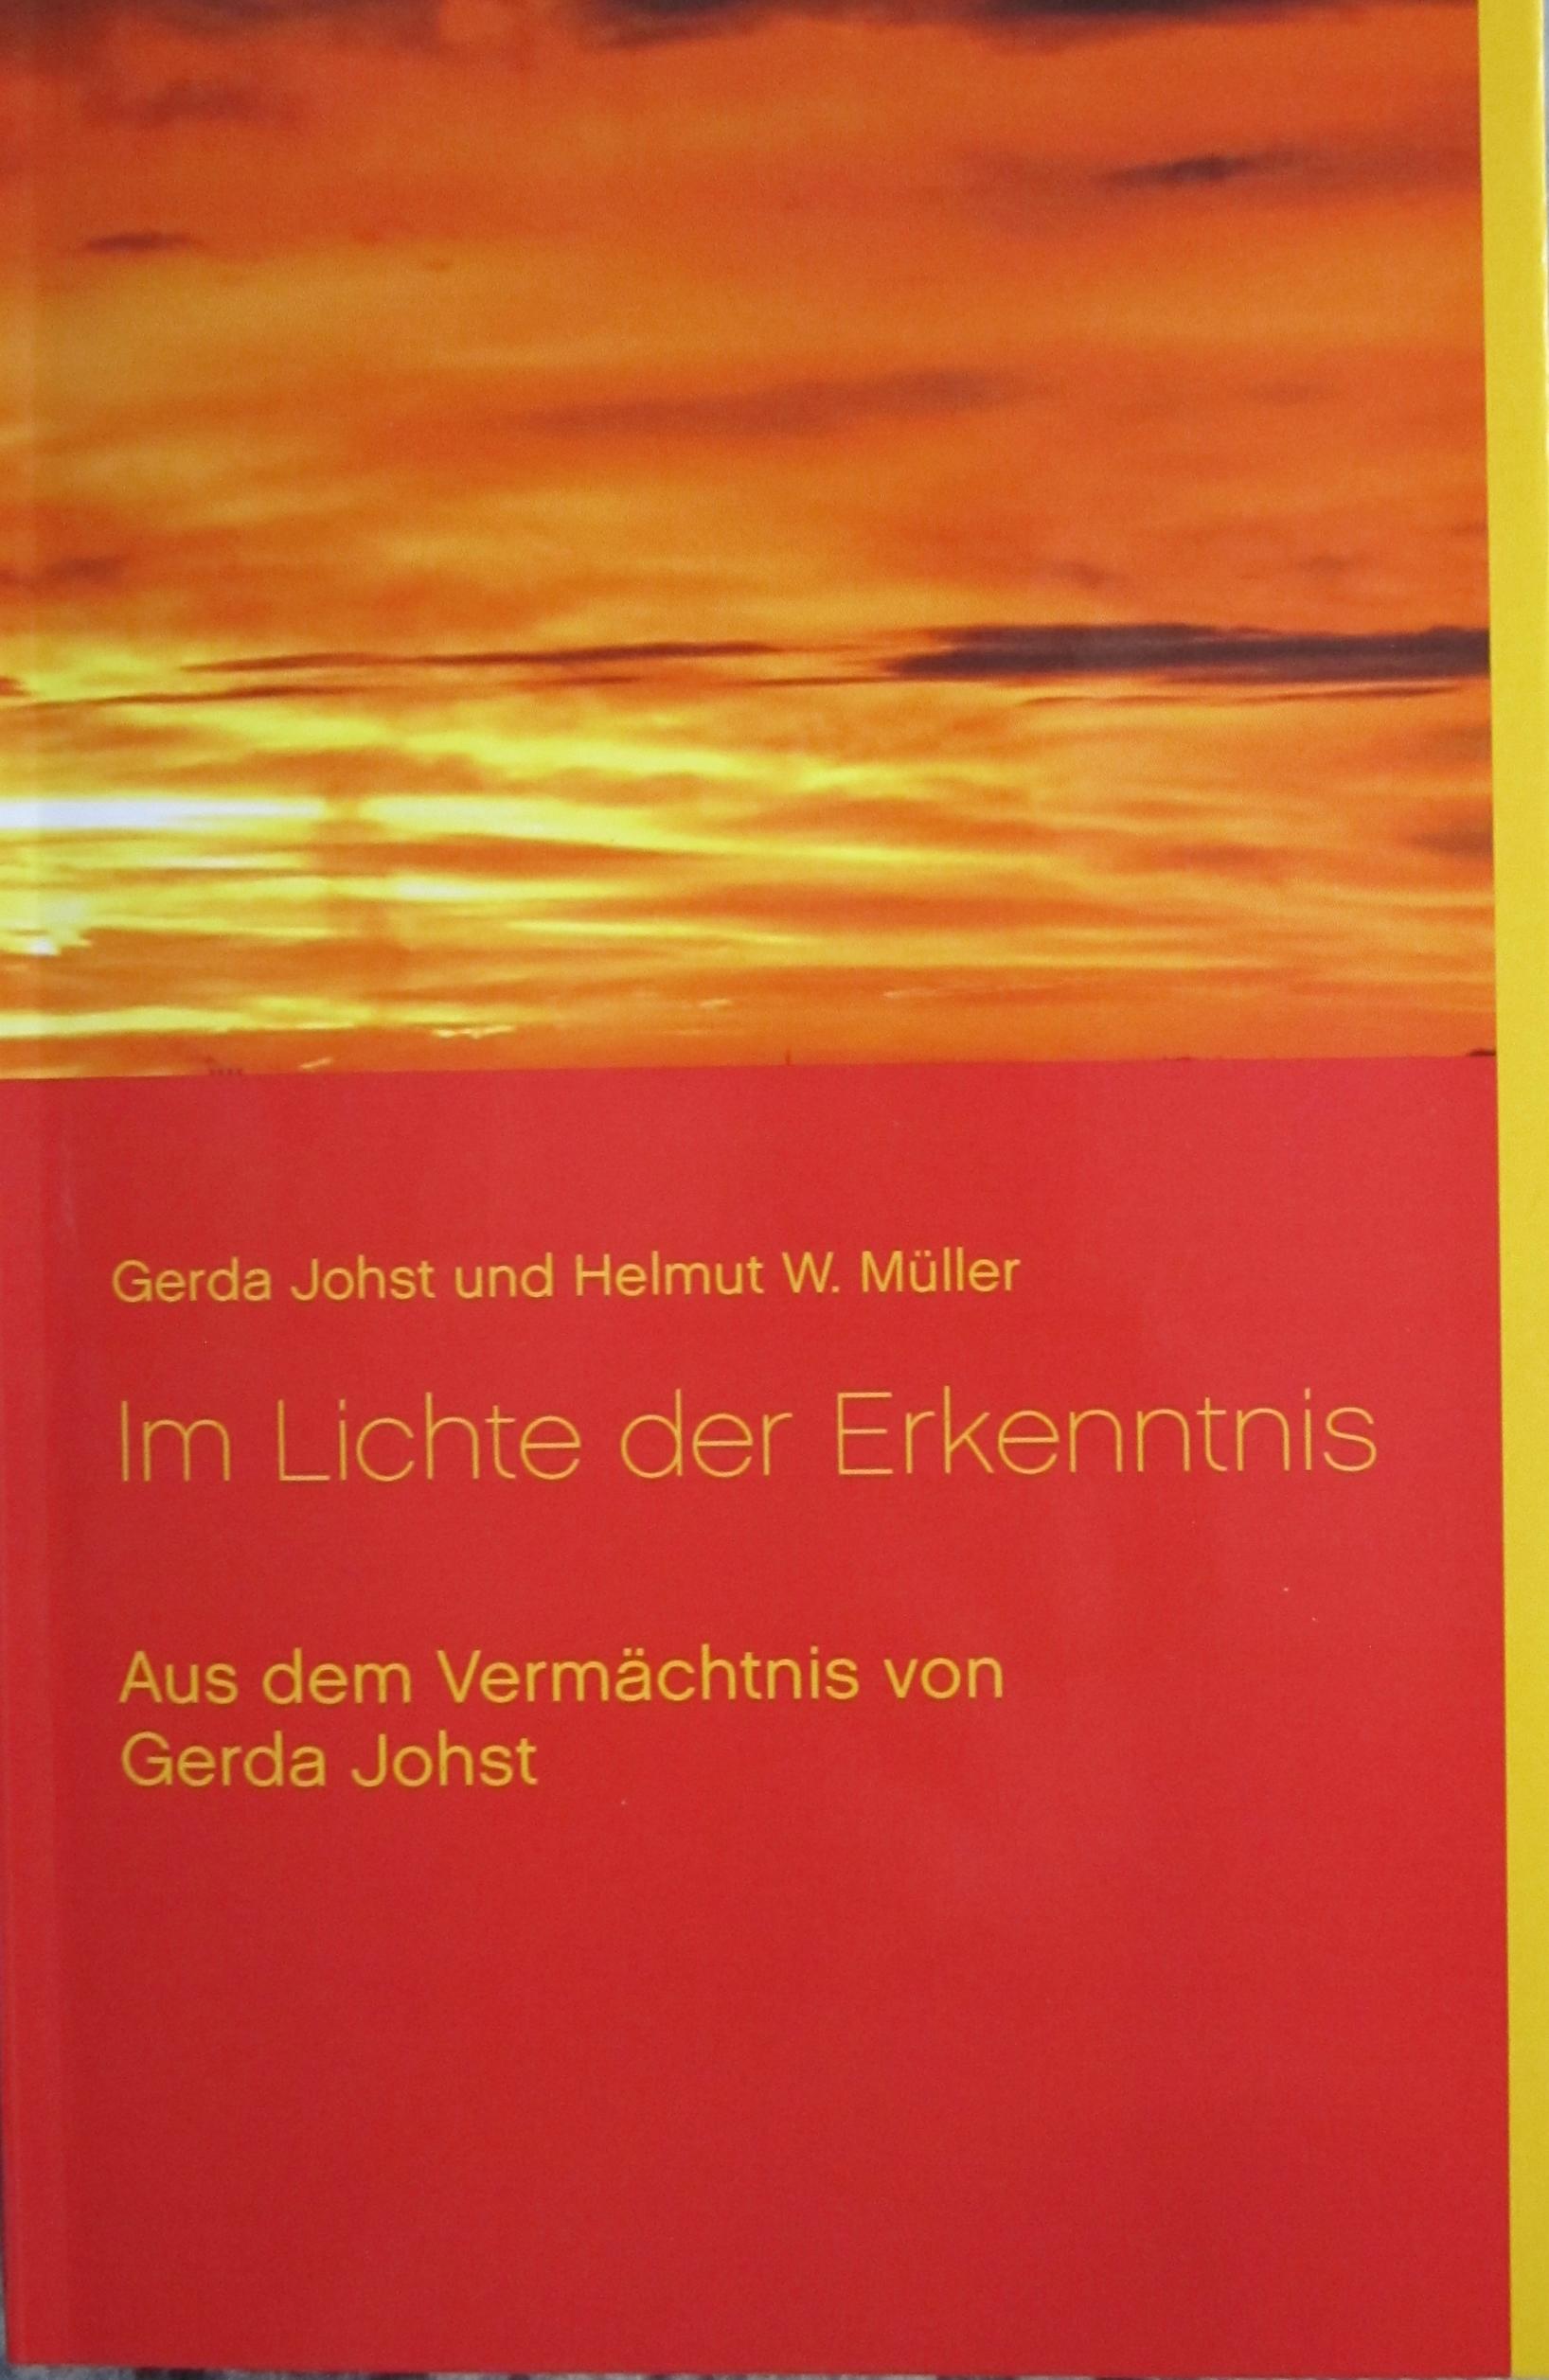 Buchumschlag des Buches "Im Lichte der Erkenntnis" von Gerda Johst